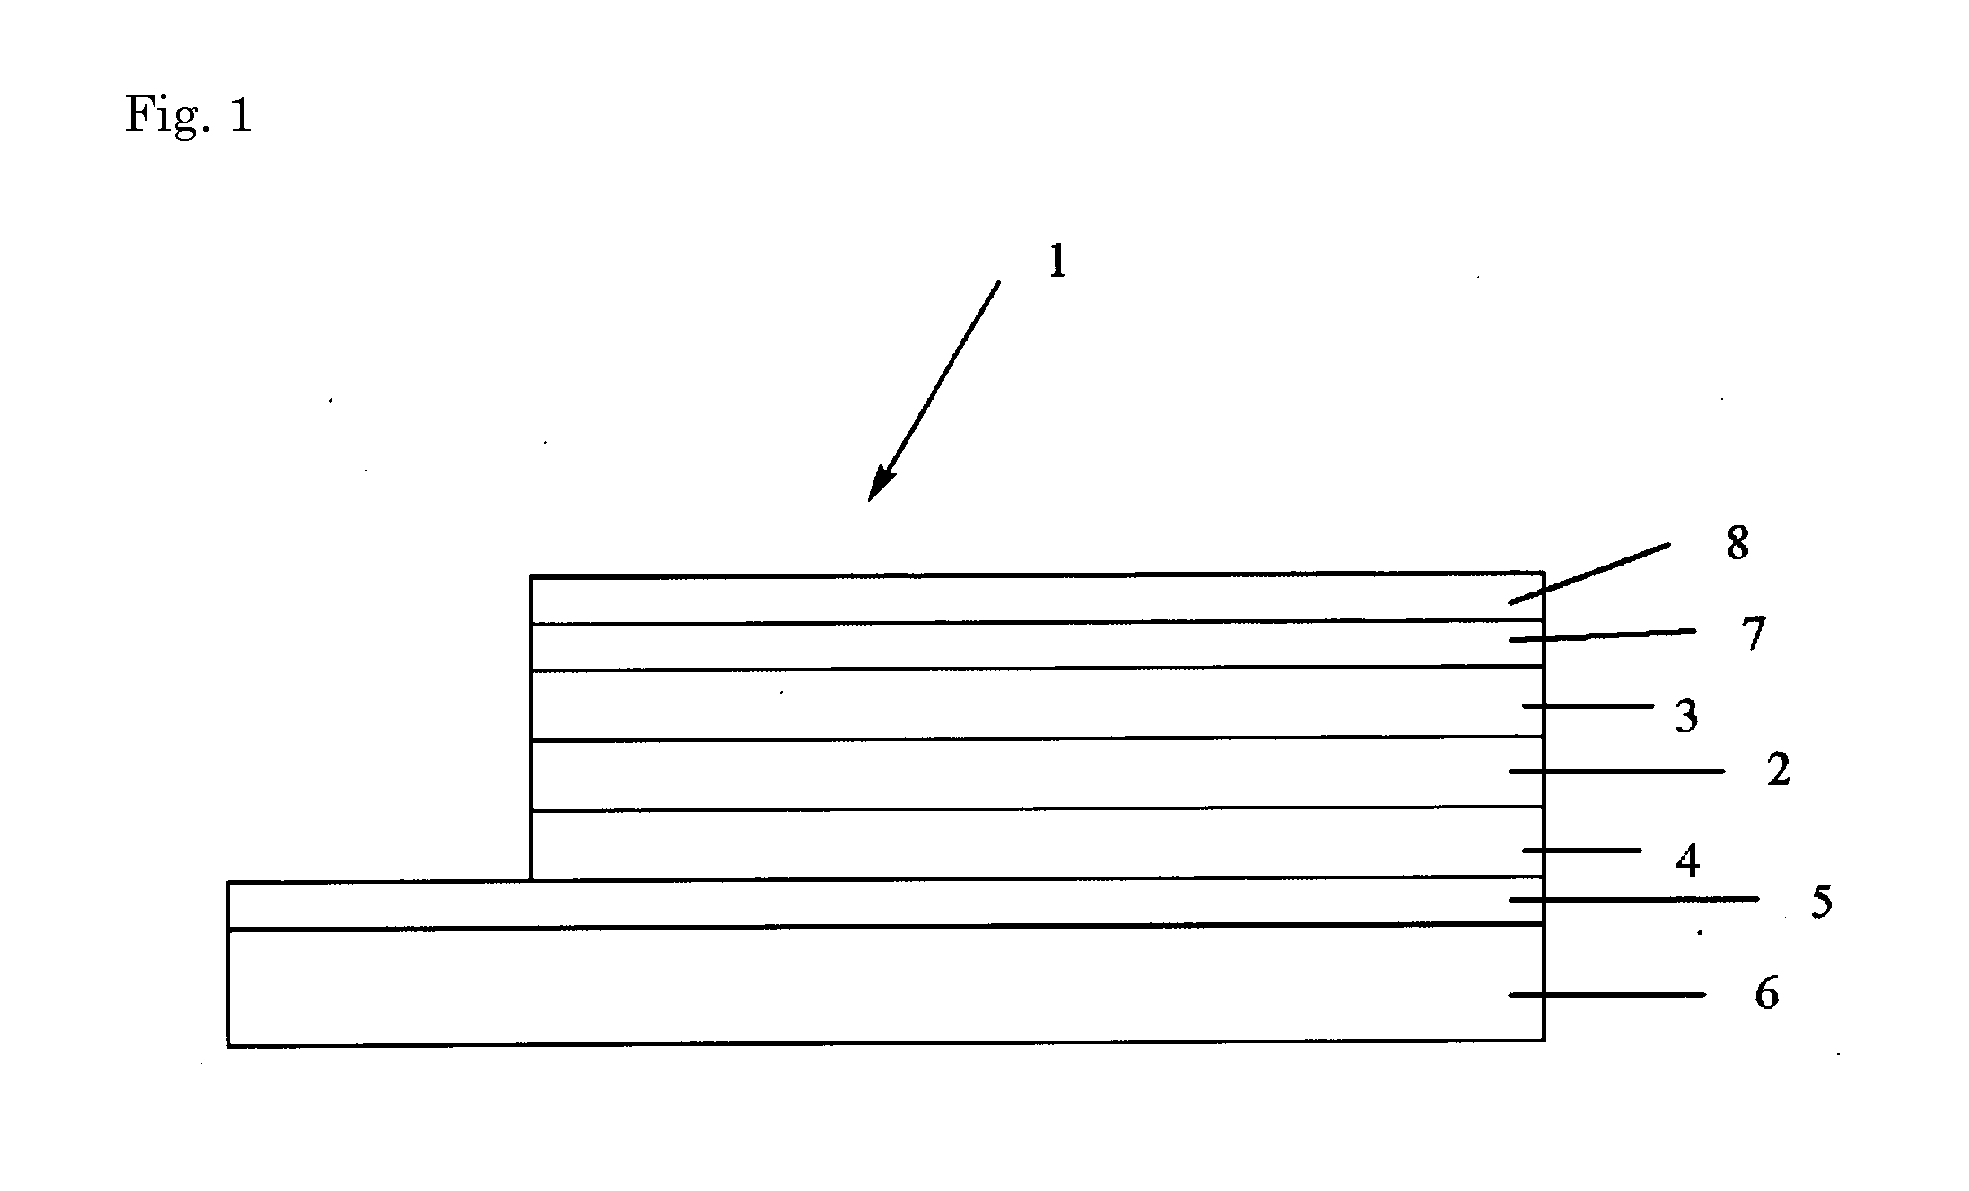 Photoelectric conversion element